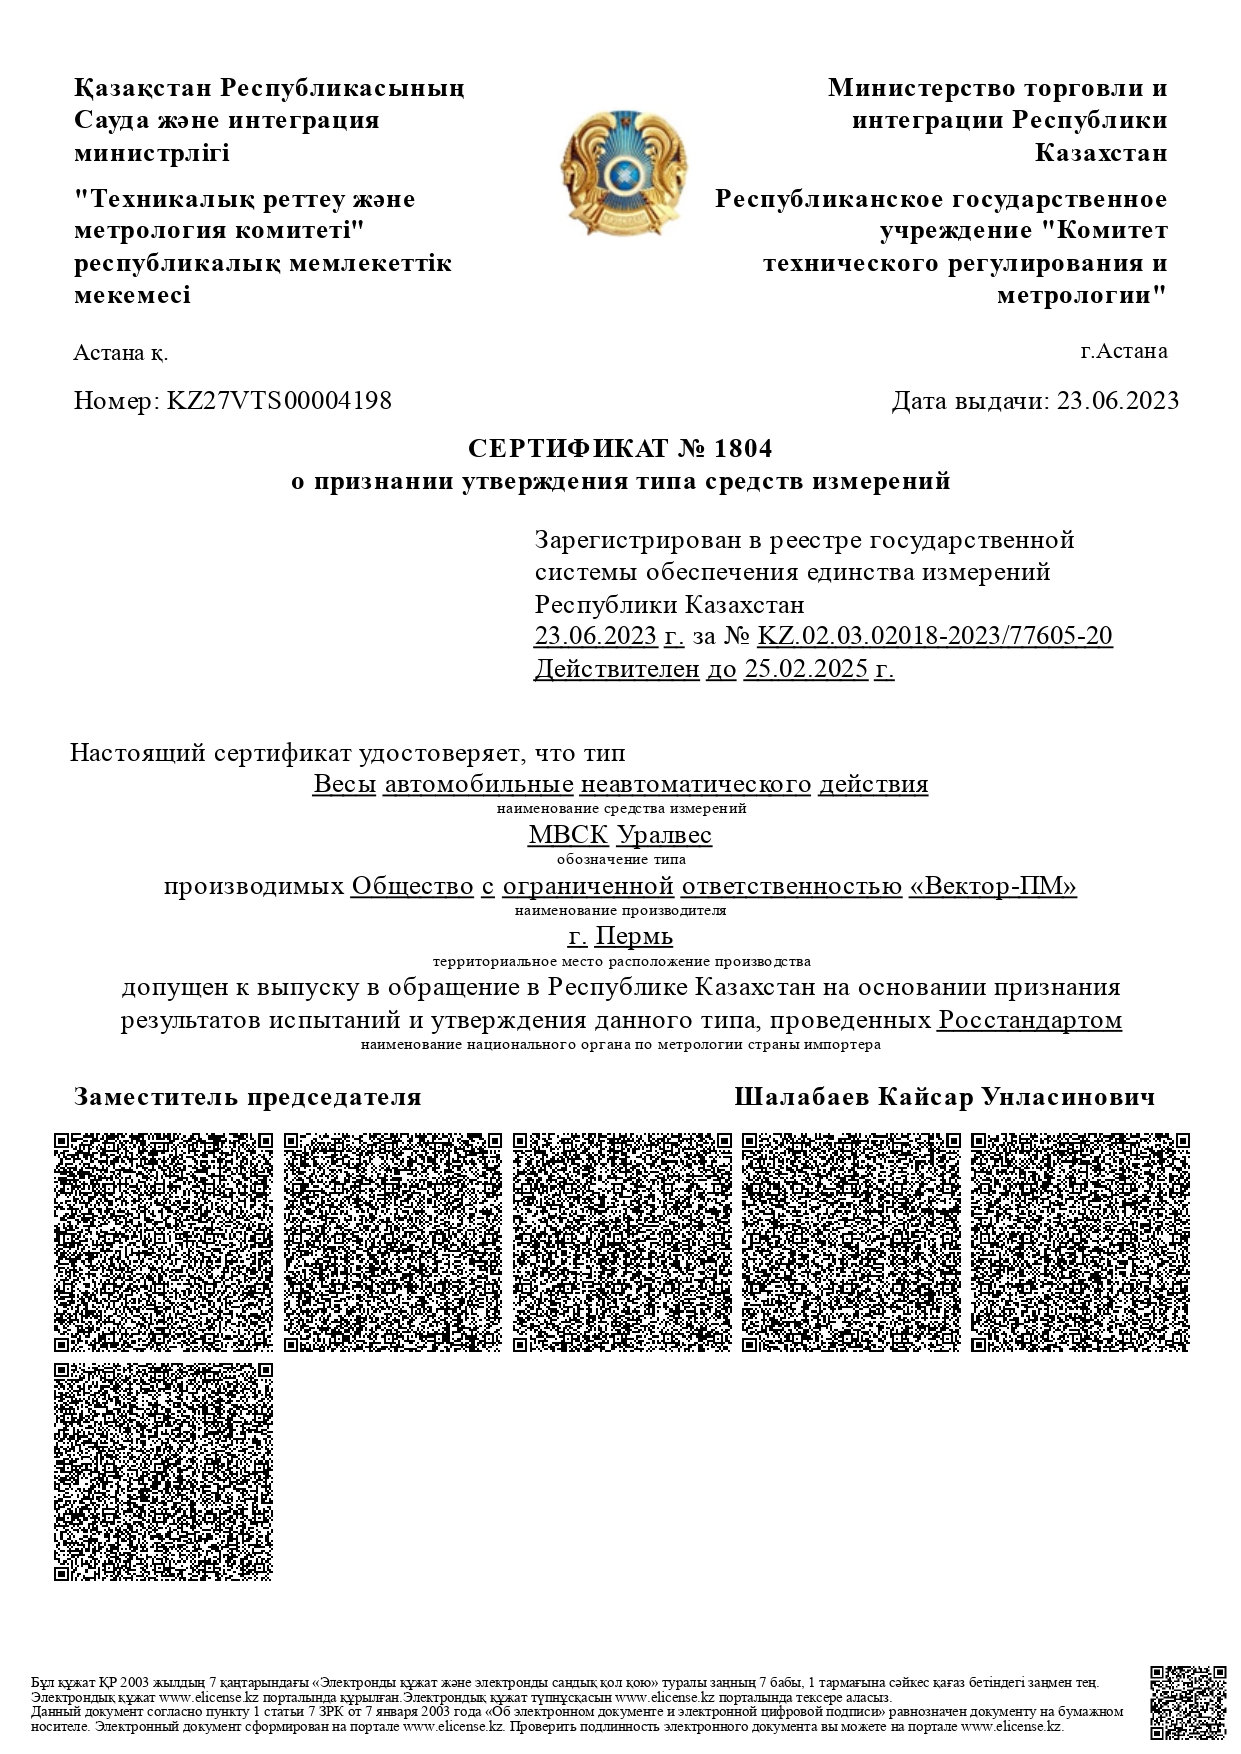 Сертификат в казахстан МВСК-УВ_kz (колейные и сборные на казахском)